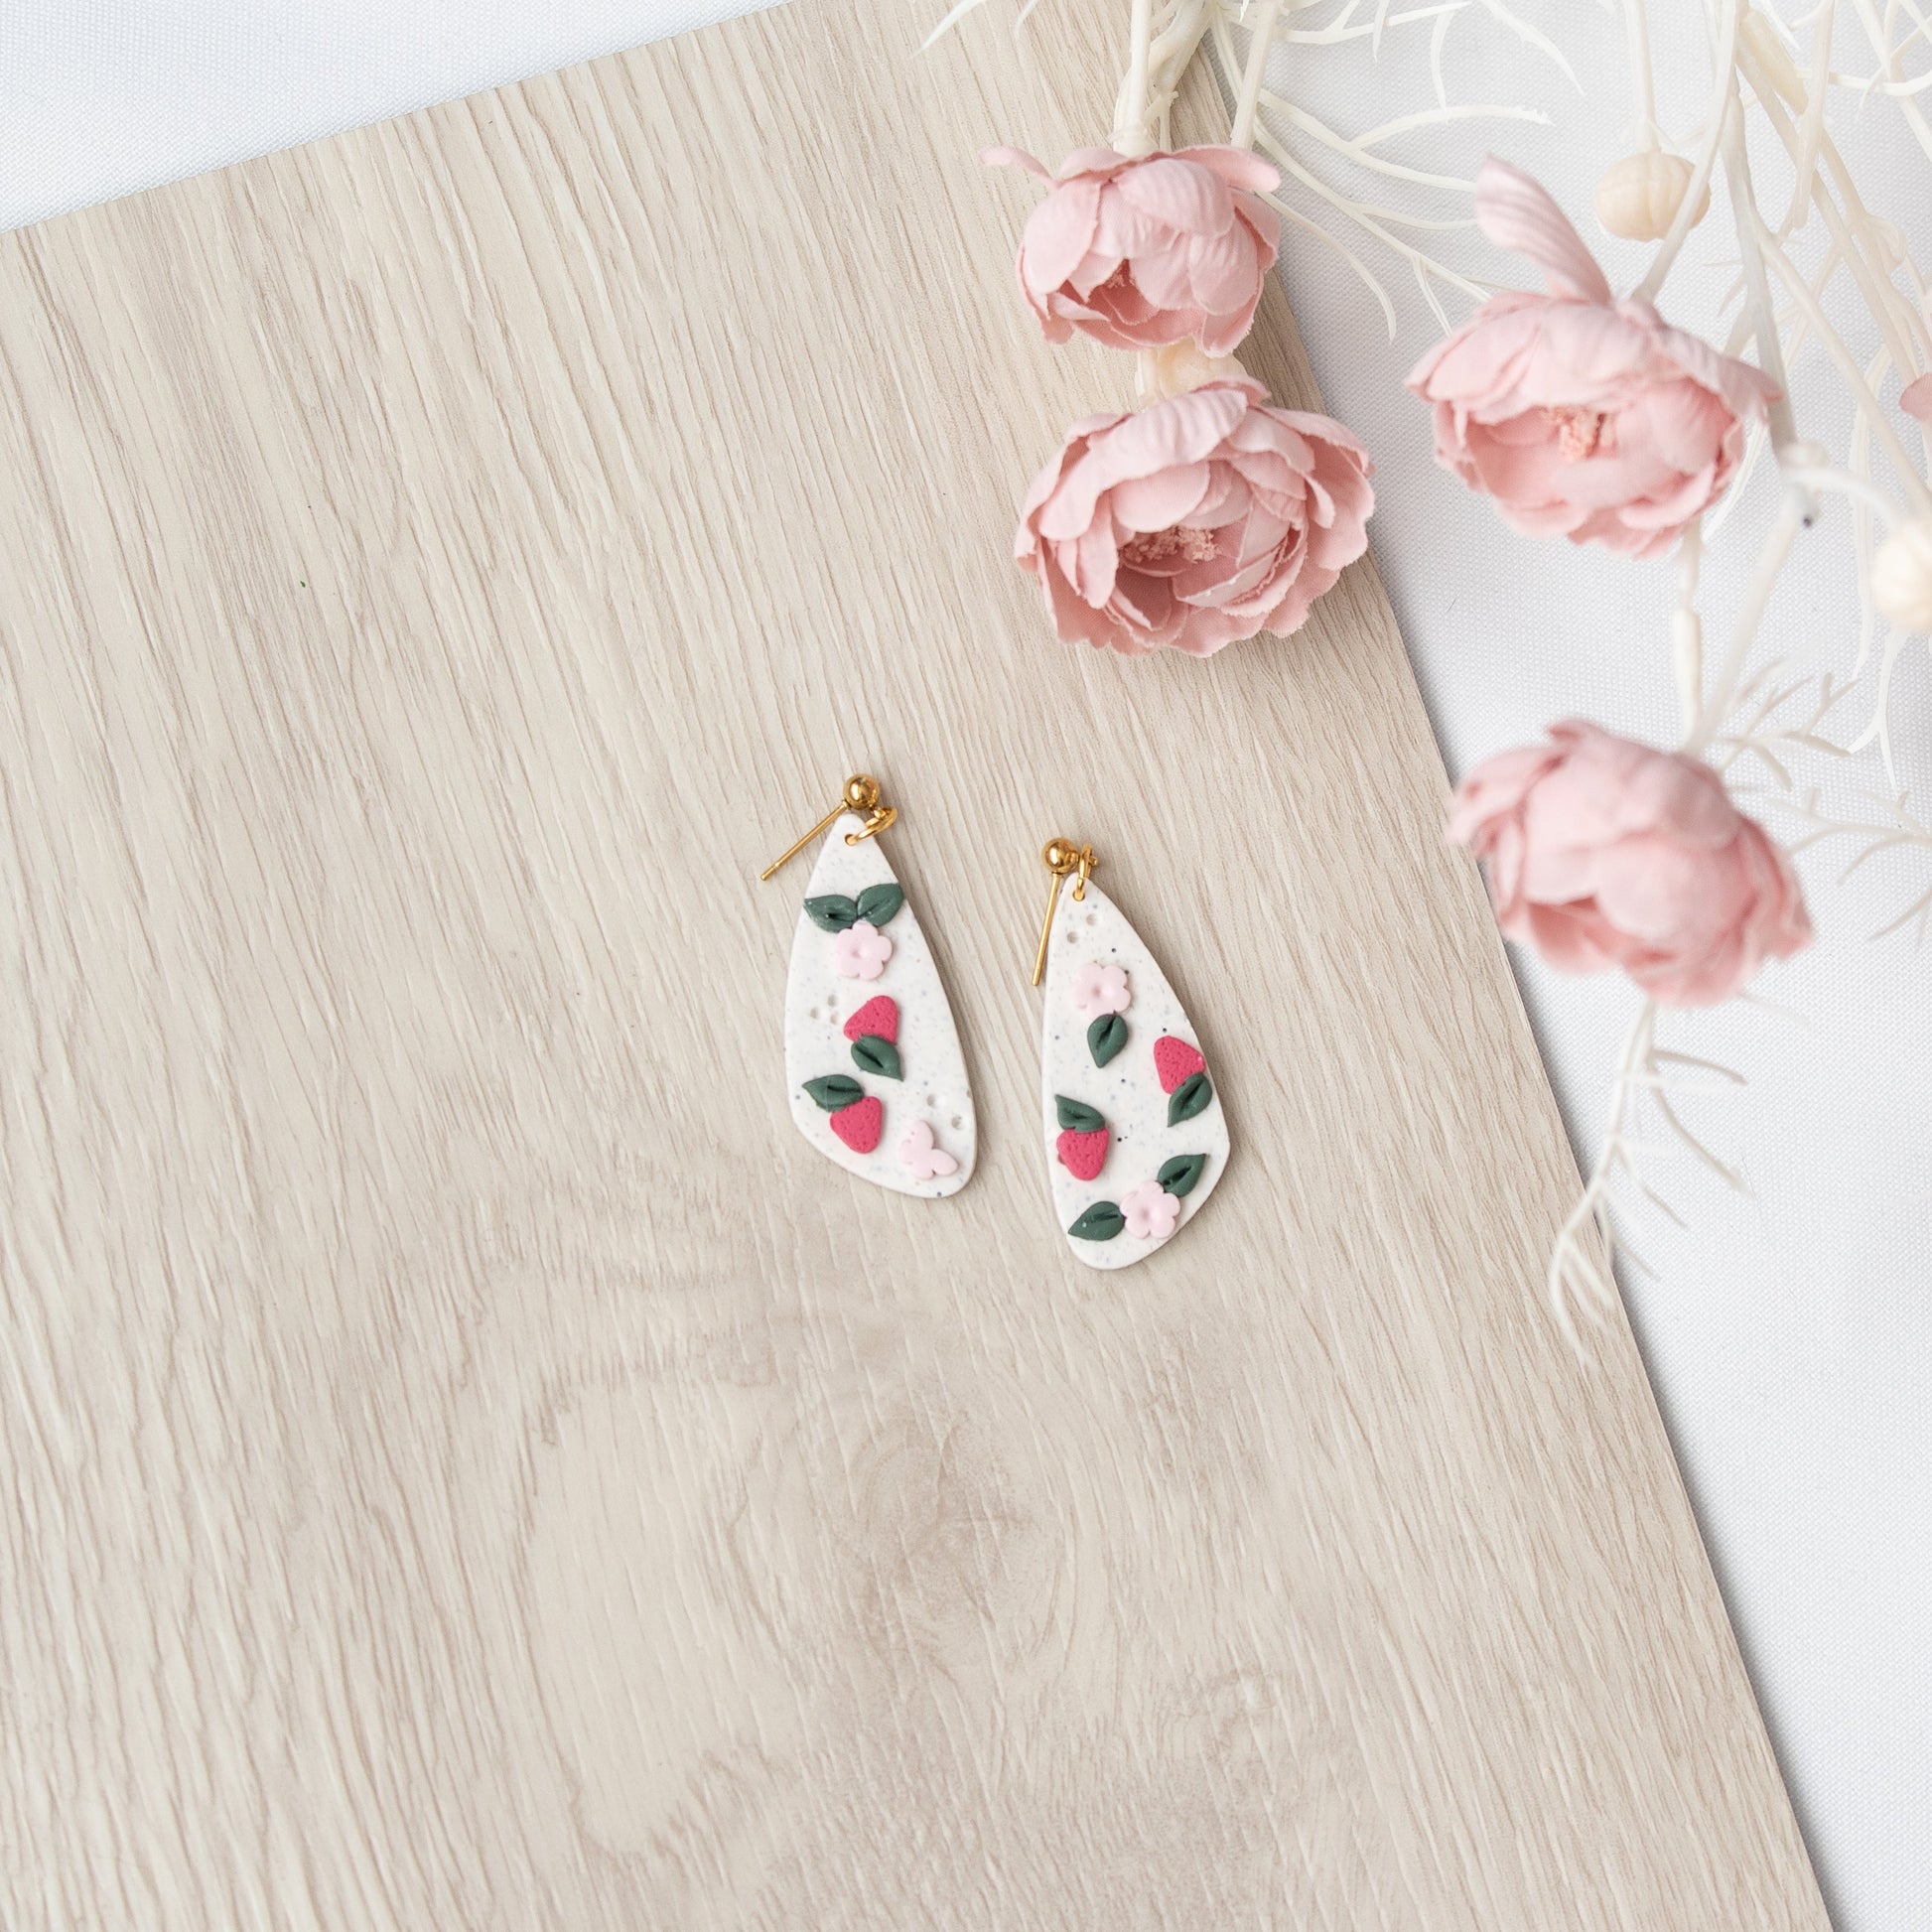 Strawberry Floral Fruit Dagger Earrings - Claymore NZ - Earrings